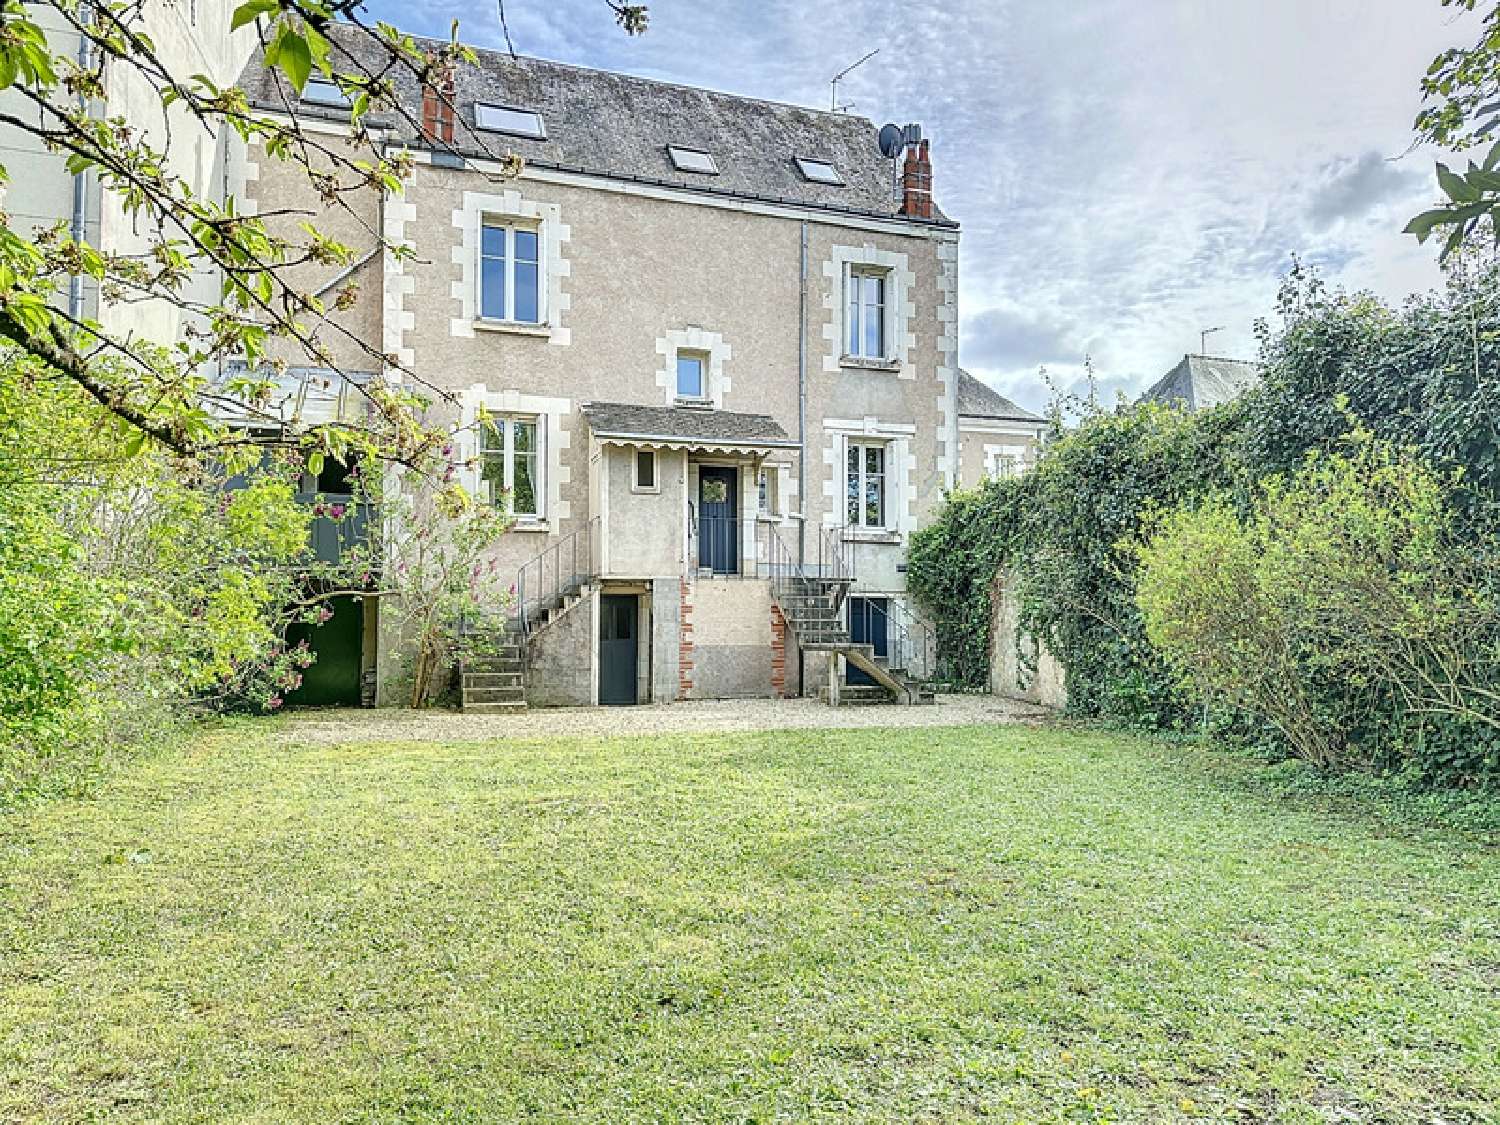  à vendre maison bourgeoise Saint-Avertin Indre-et-Loire 1